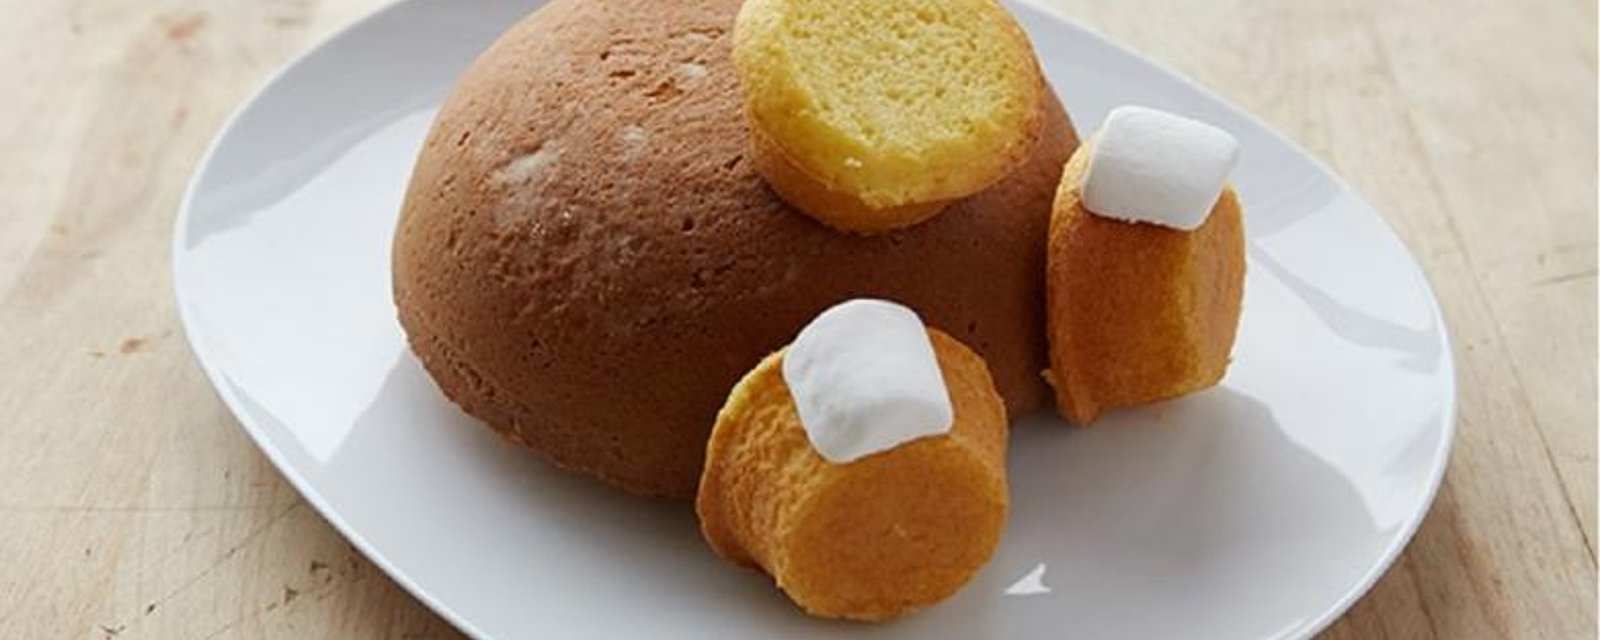 Avec 1 gateau rond, 3 cupcakes et 2 guimauves, vous pourrez faire le plus mignon des gâteaux de Pâques! 